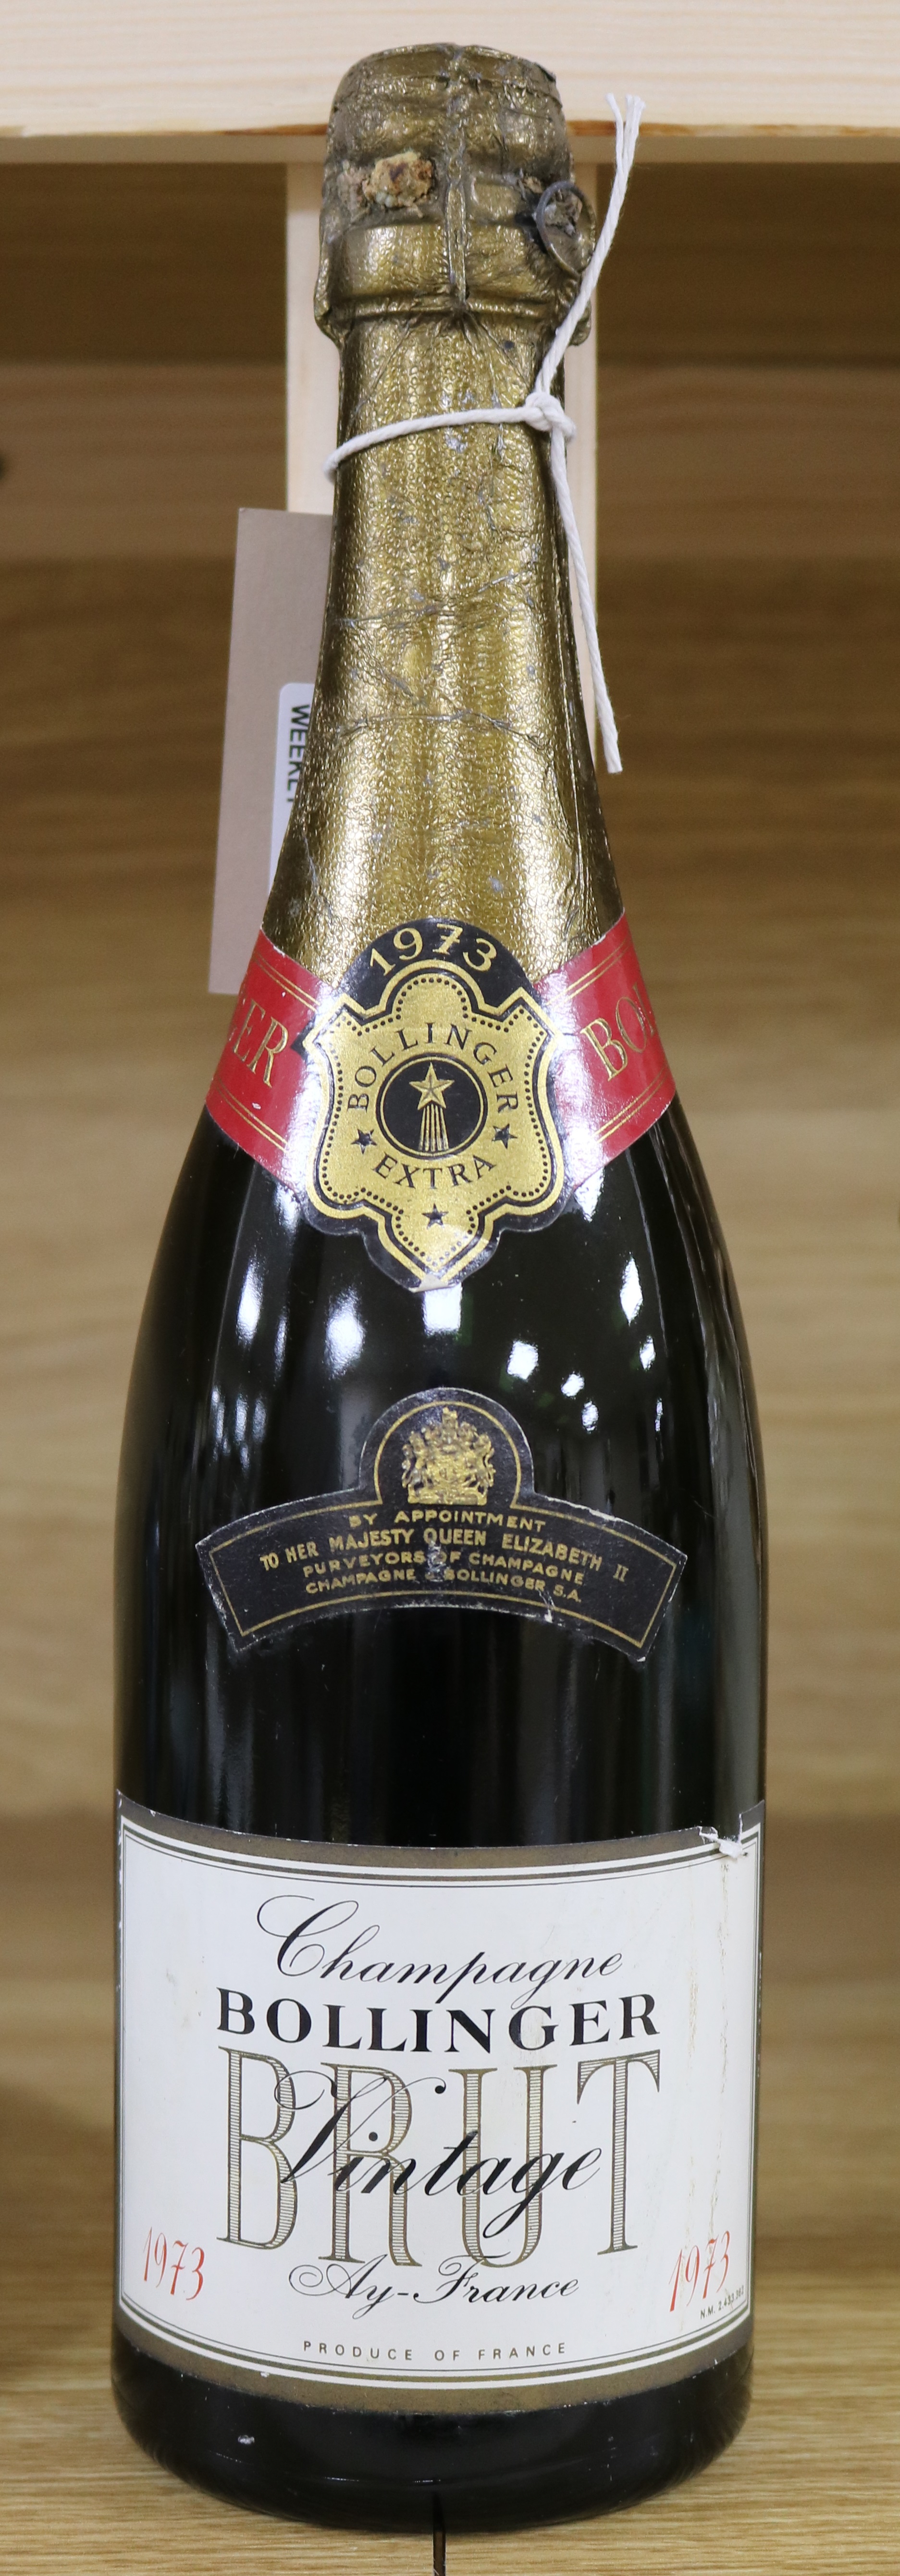 One bottle of Bollinger vintage champagne, 1973.